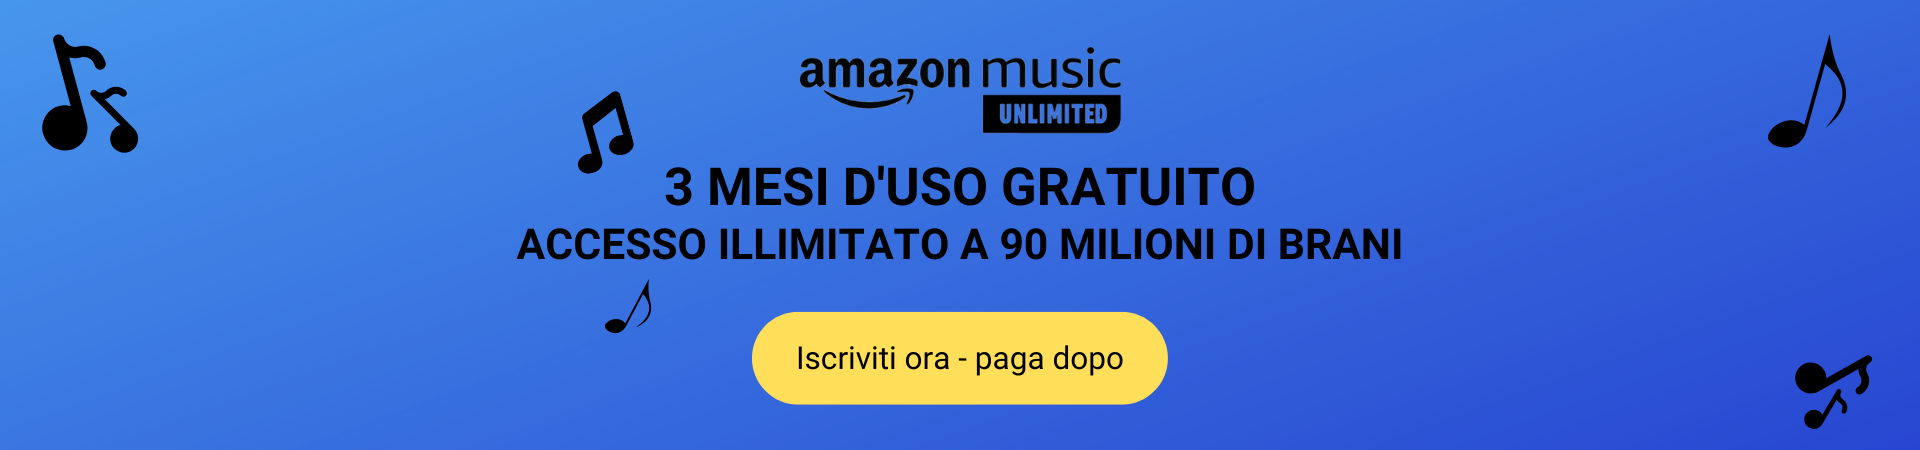 Amazon-Music-Unlimited-Titanet-Minecraft-Offerta-3-Mesi